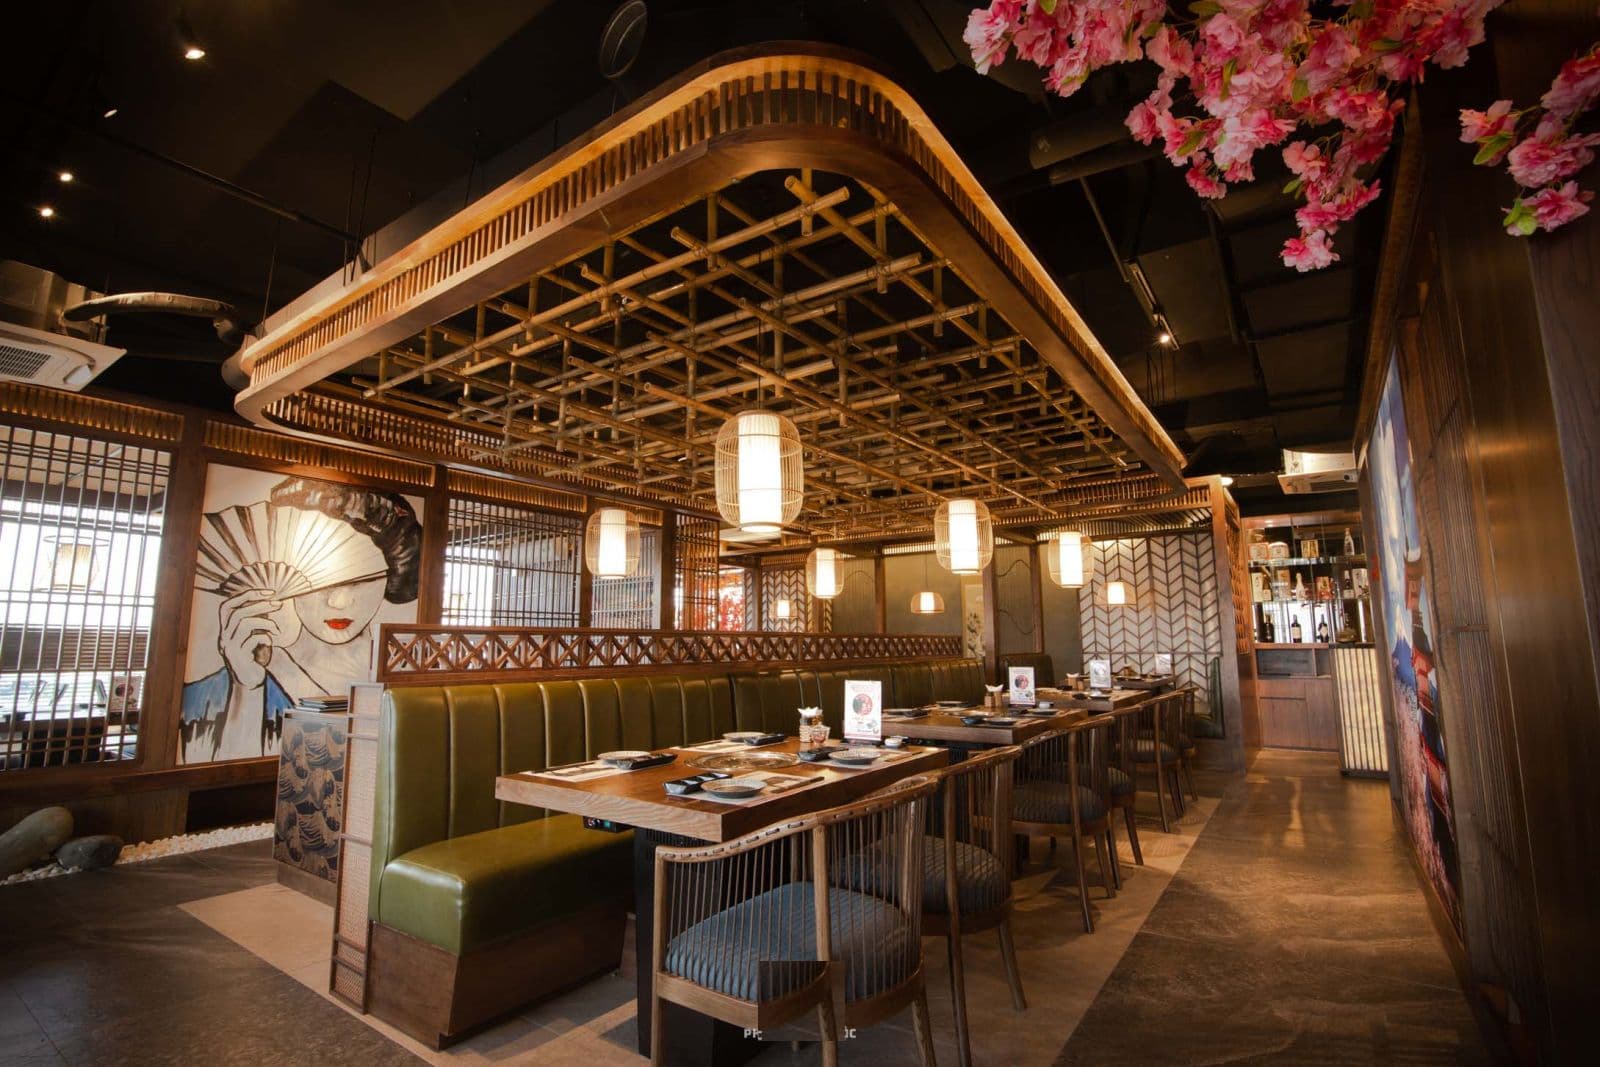 Tham khảo thiết kế nhà hàng Nhật với nhiều dạng kiến trúc khác nhau 